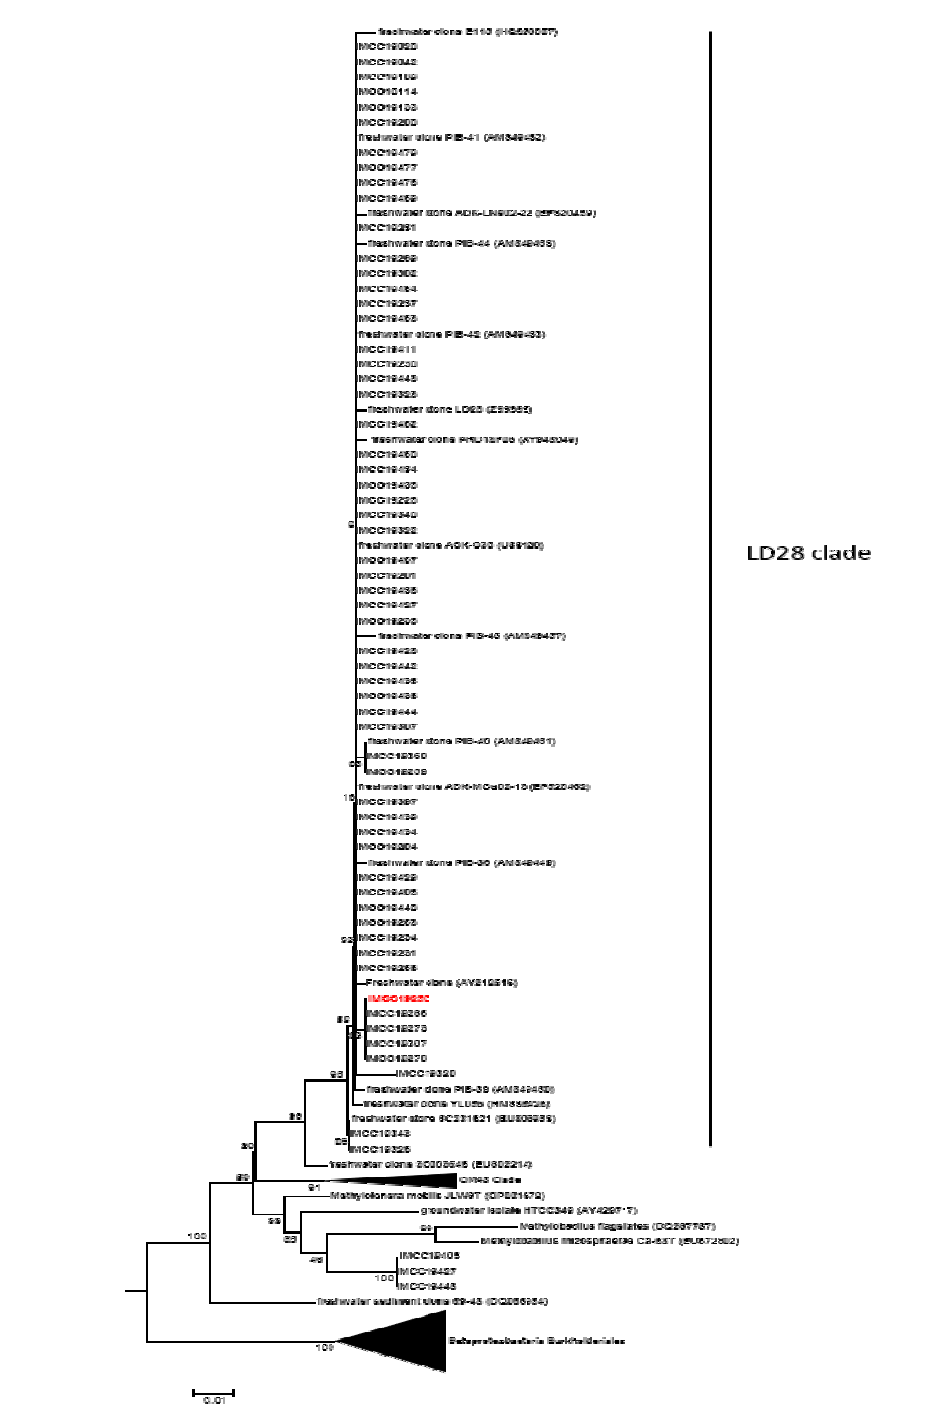 소양호에서 분리한 LD28 그룹에 속하는 59개의 균주의 16S rRNA phylogenetic tree